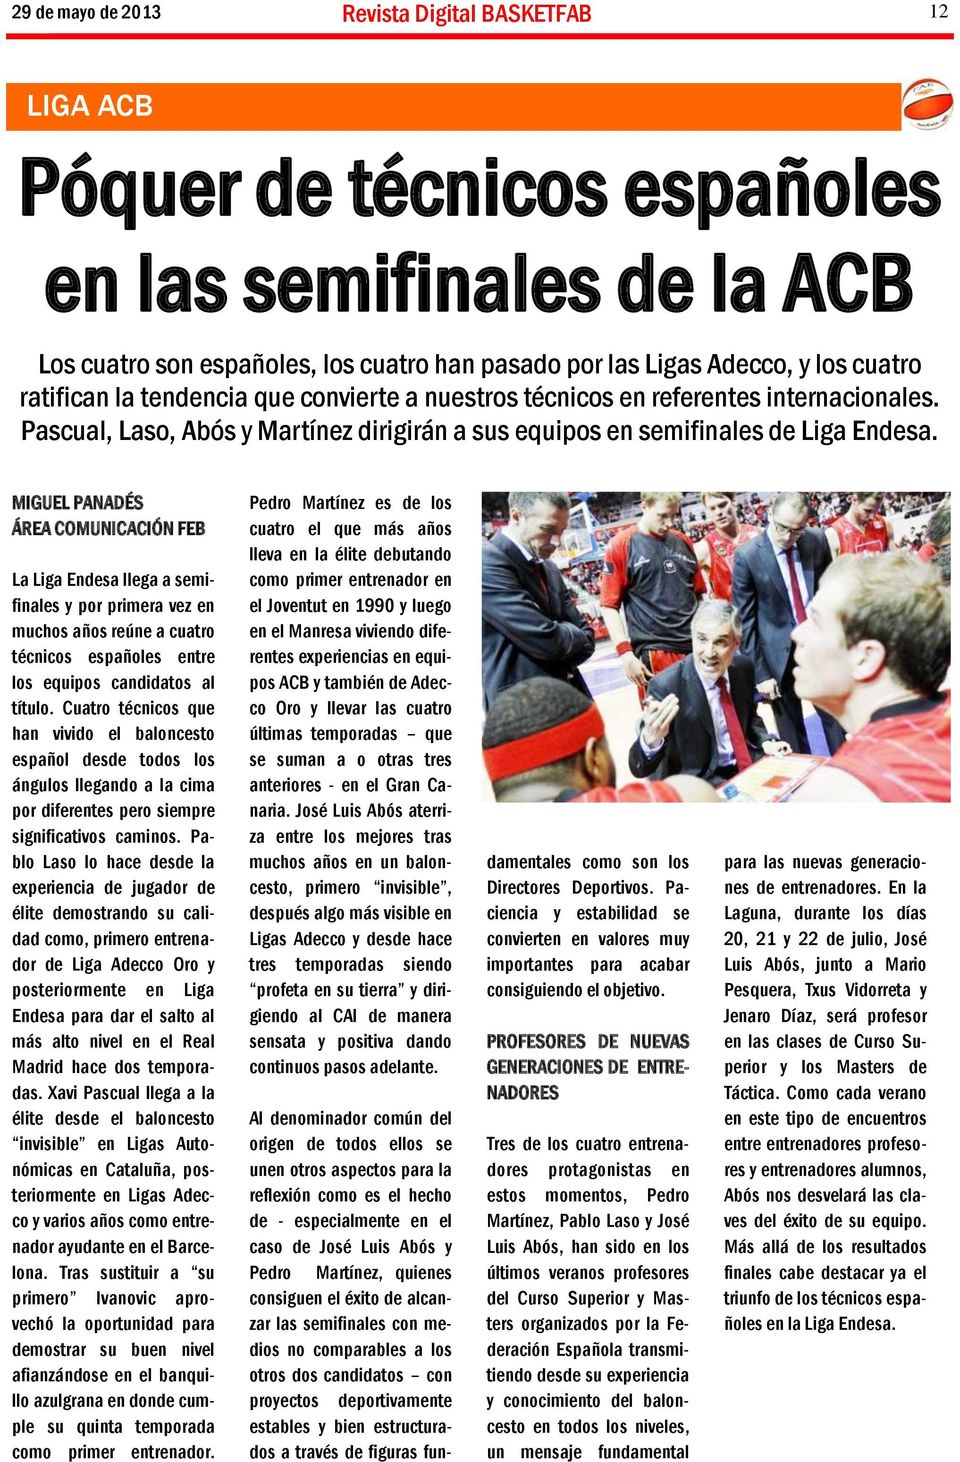 MIGUEL PANADÉS ÁREA COMUNICACIÓN FEB La Liga Endesa llega a semifinales y por primera vez en muchos años reúne a cuatro técnicos españoles entre los equipos candidatos al título.